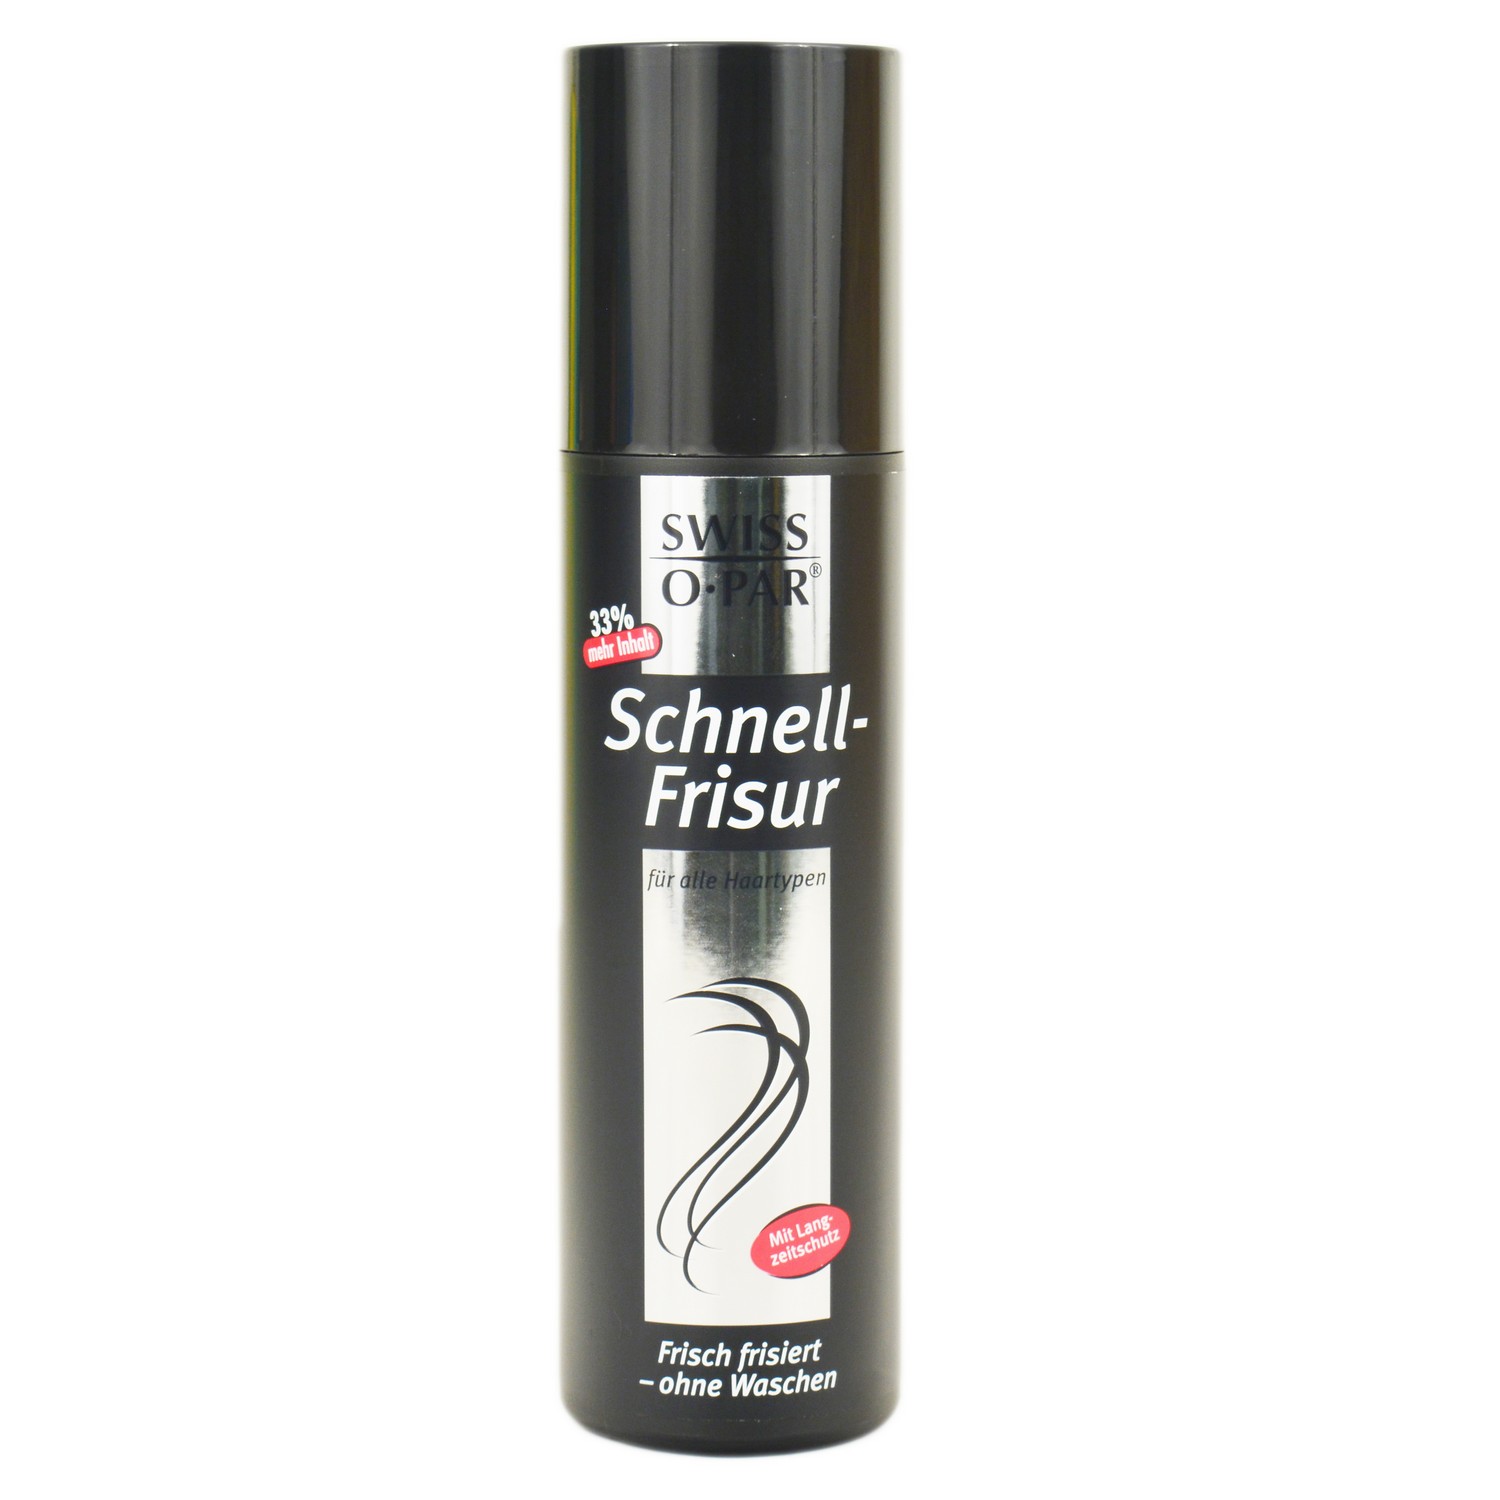 Swiss-o-Par Schnell-Frisur Spray 200ml